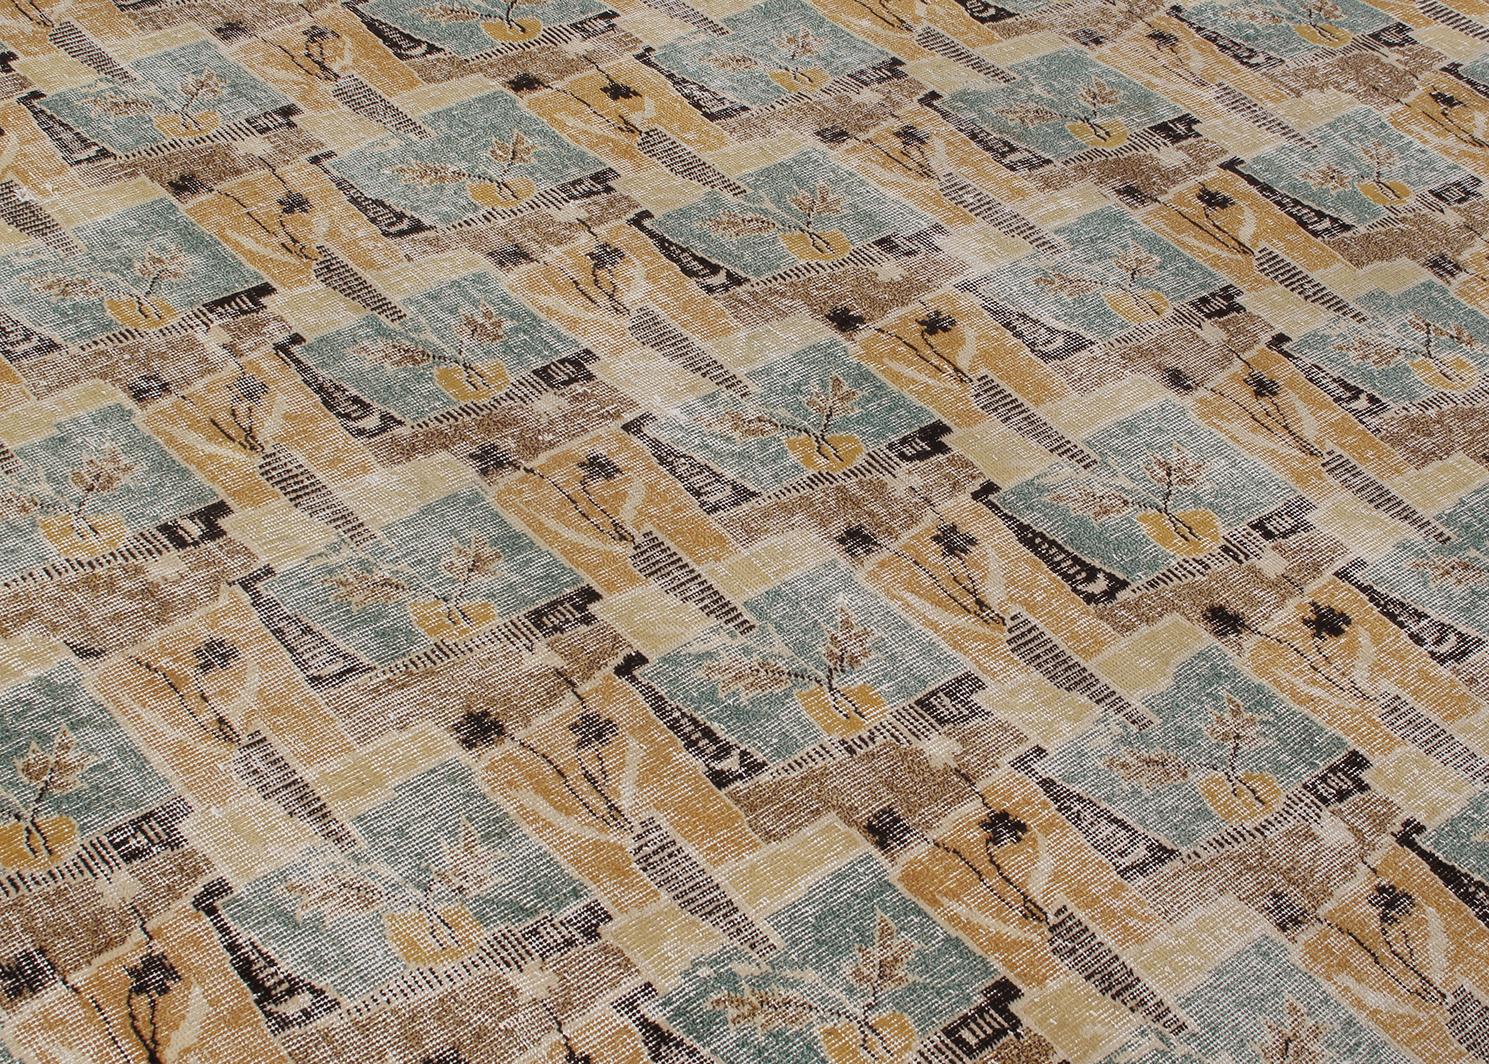 Ce tapis Art of Vintage a été fabriqué à la main en Turquie, vers le milieu du 20e siècle. Il est dans le style de Zeki Muren, un artiste turc multidisciplinaire, connu pour ses dessins audacieux, géométriques et fantaisistes. L'association